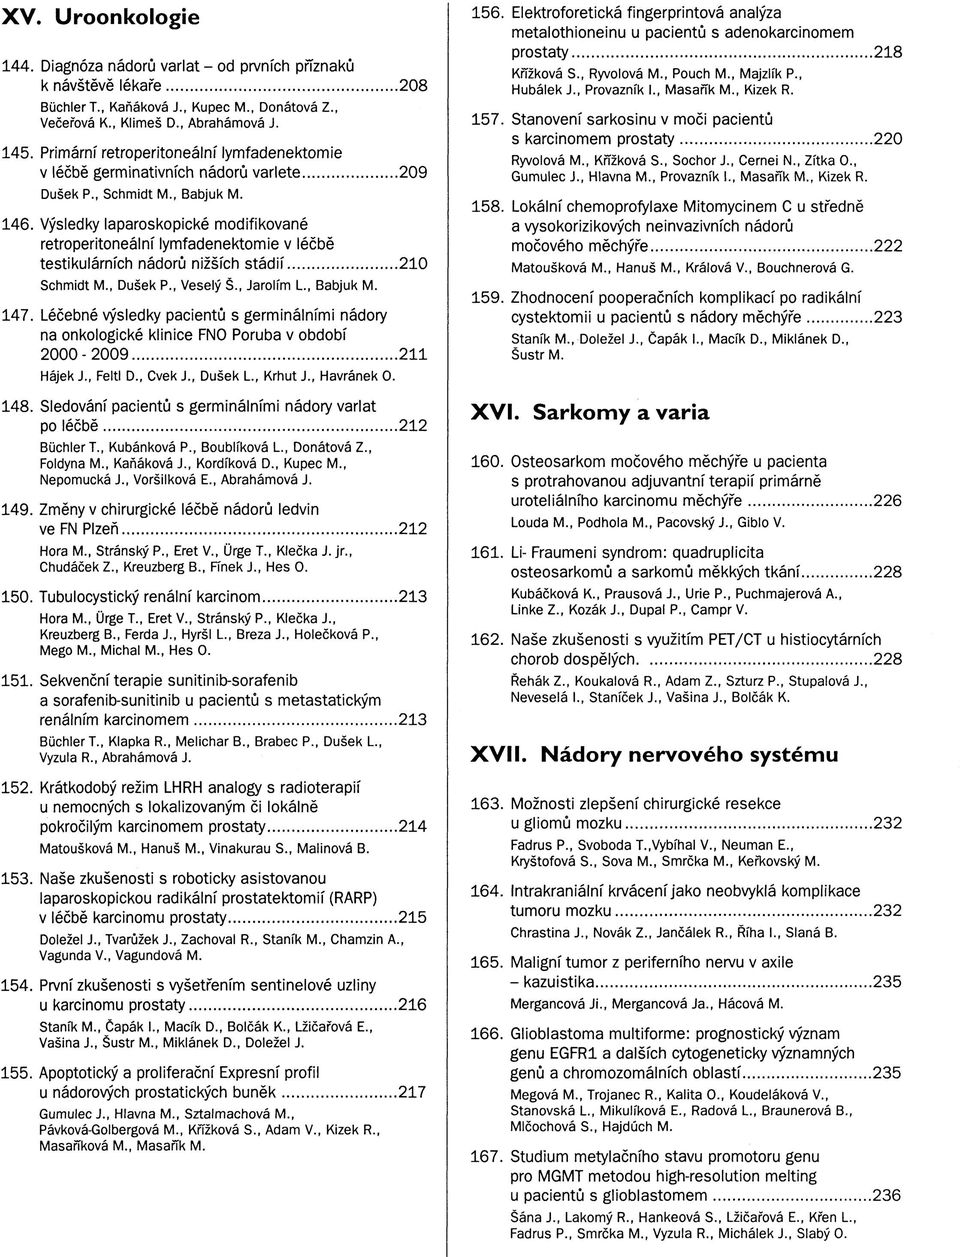 Výsledky laparoskopické modifikované retroperitoneální lymfadenektomie v léčbě testikulárních nádorů nižších stádií 210 Schmidt M., Dušek P., Veselý Š., Jarolím L, Babjuk M. 147.